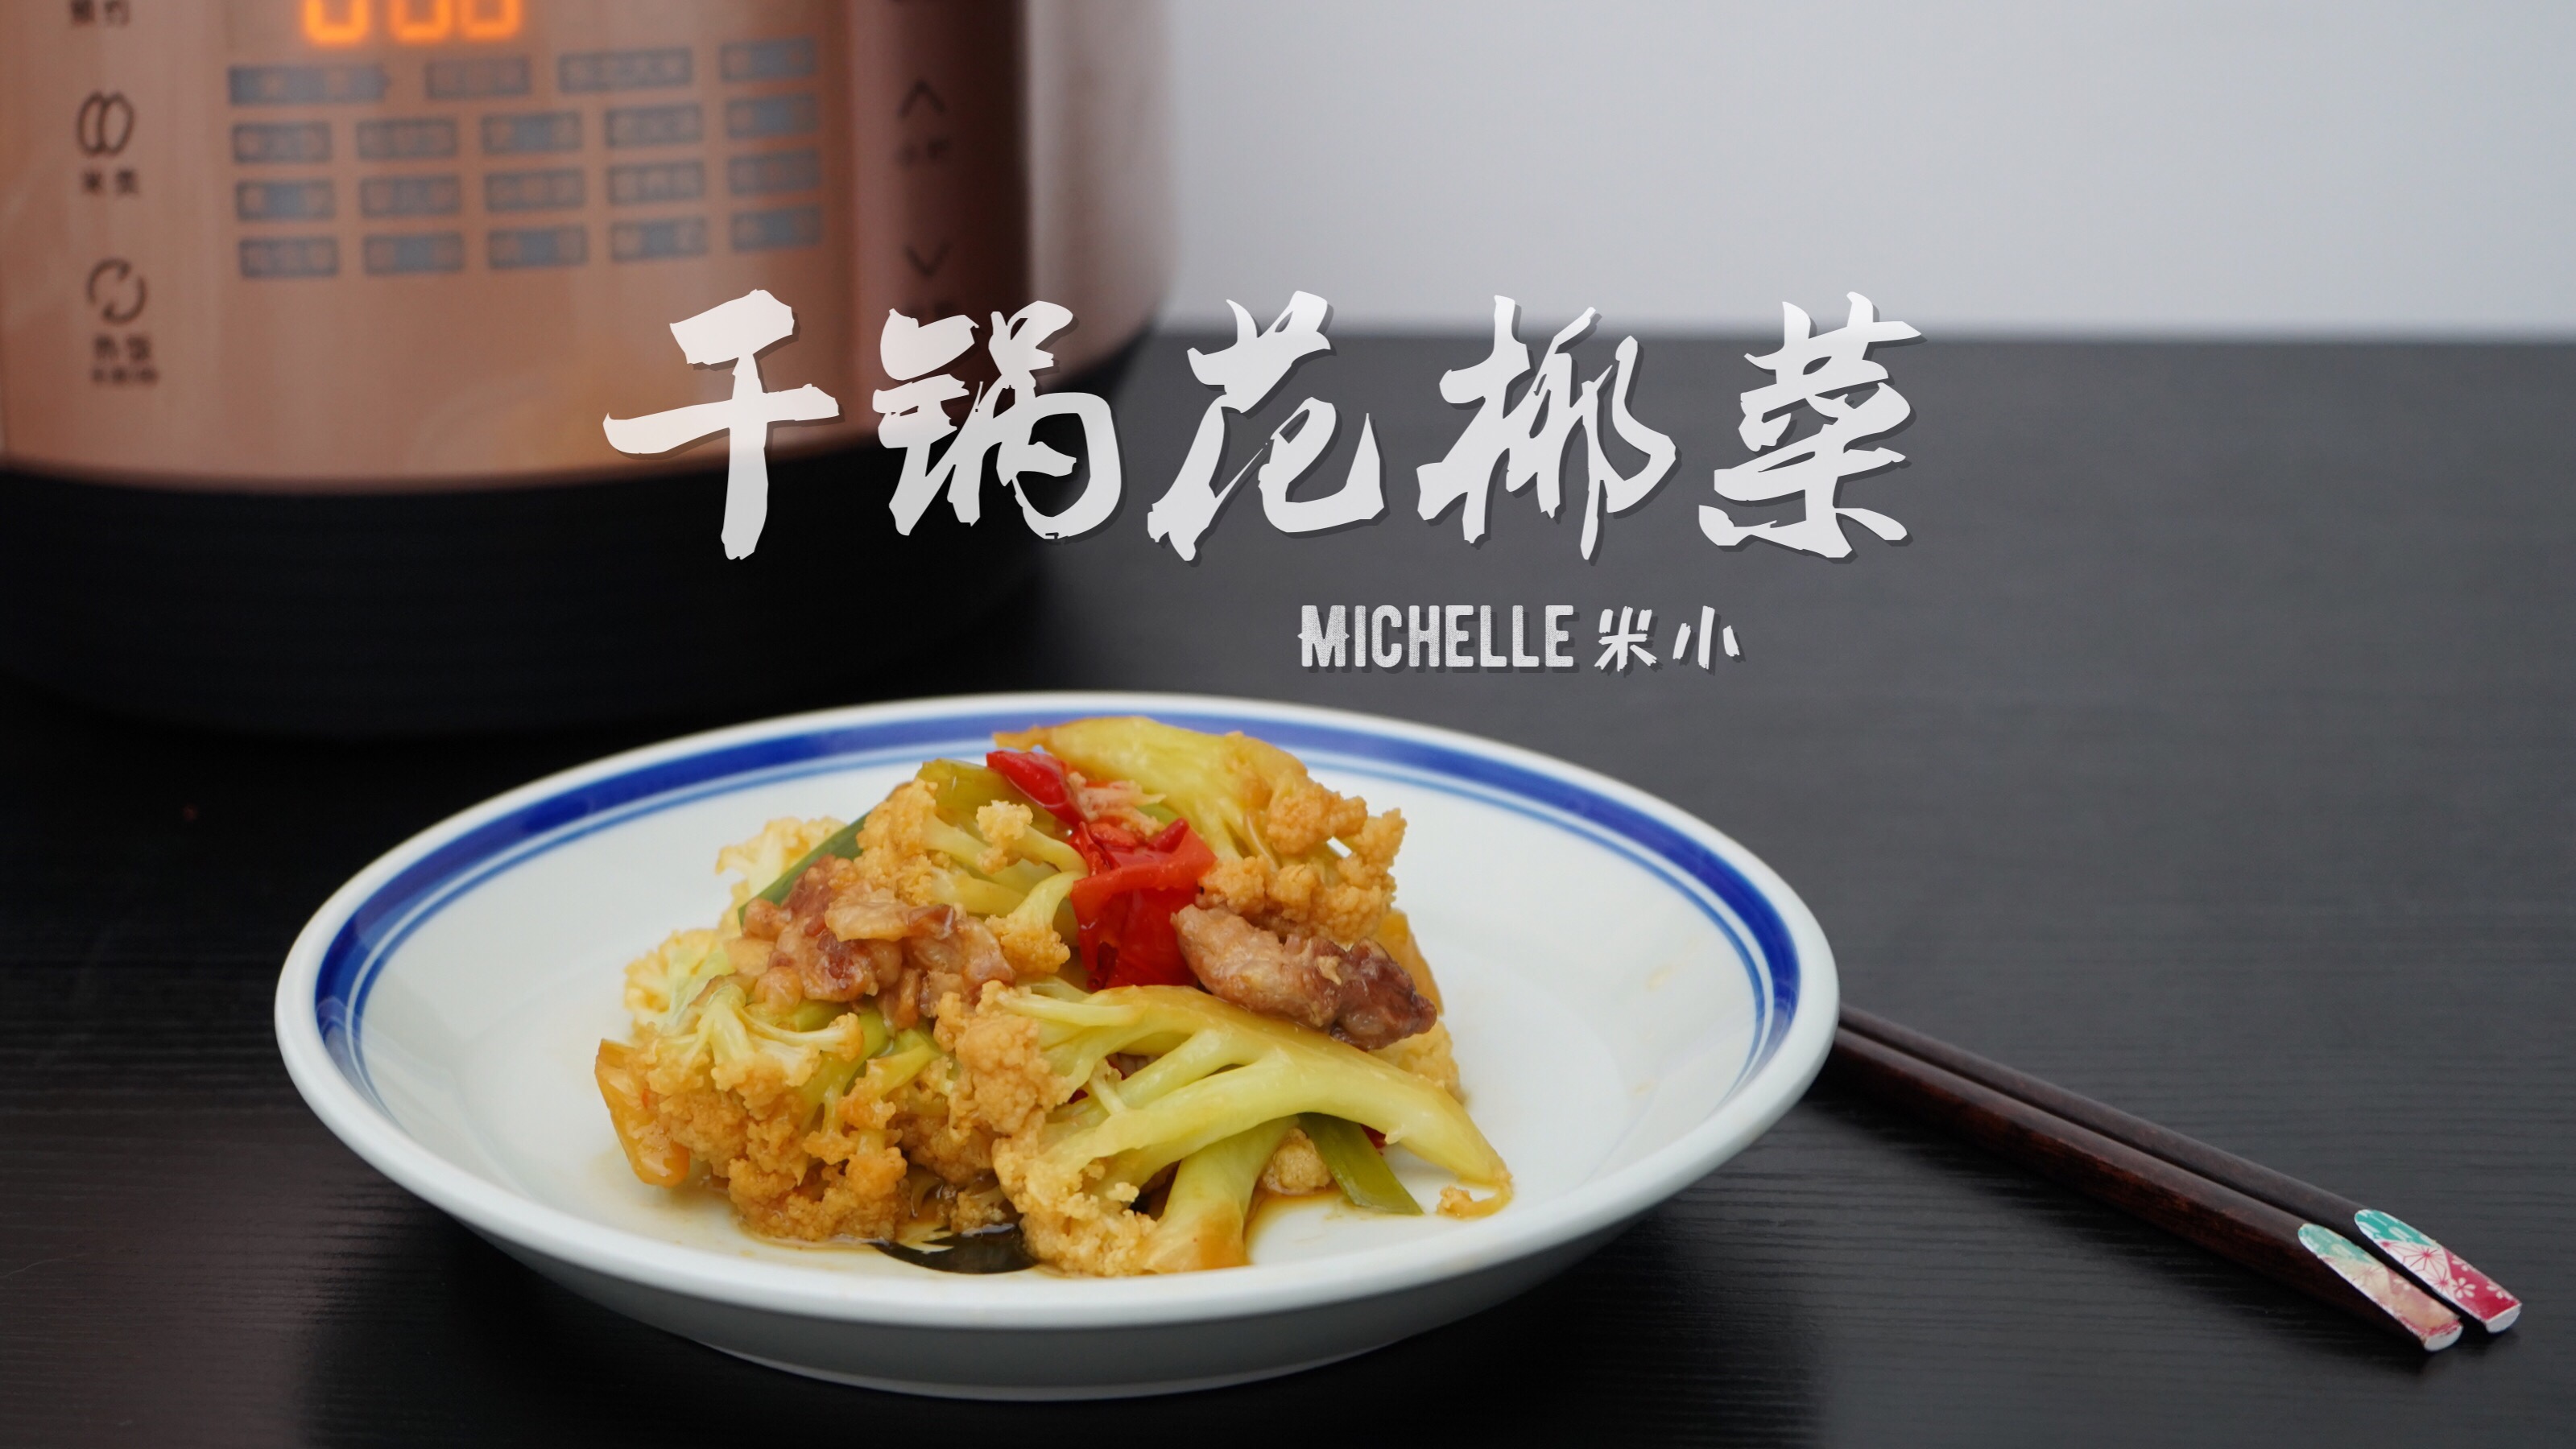 米小料理 干锅花椰菜 电饭锅料理13 的做法步骤图 厨娘米小 下厨房